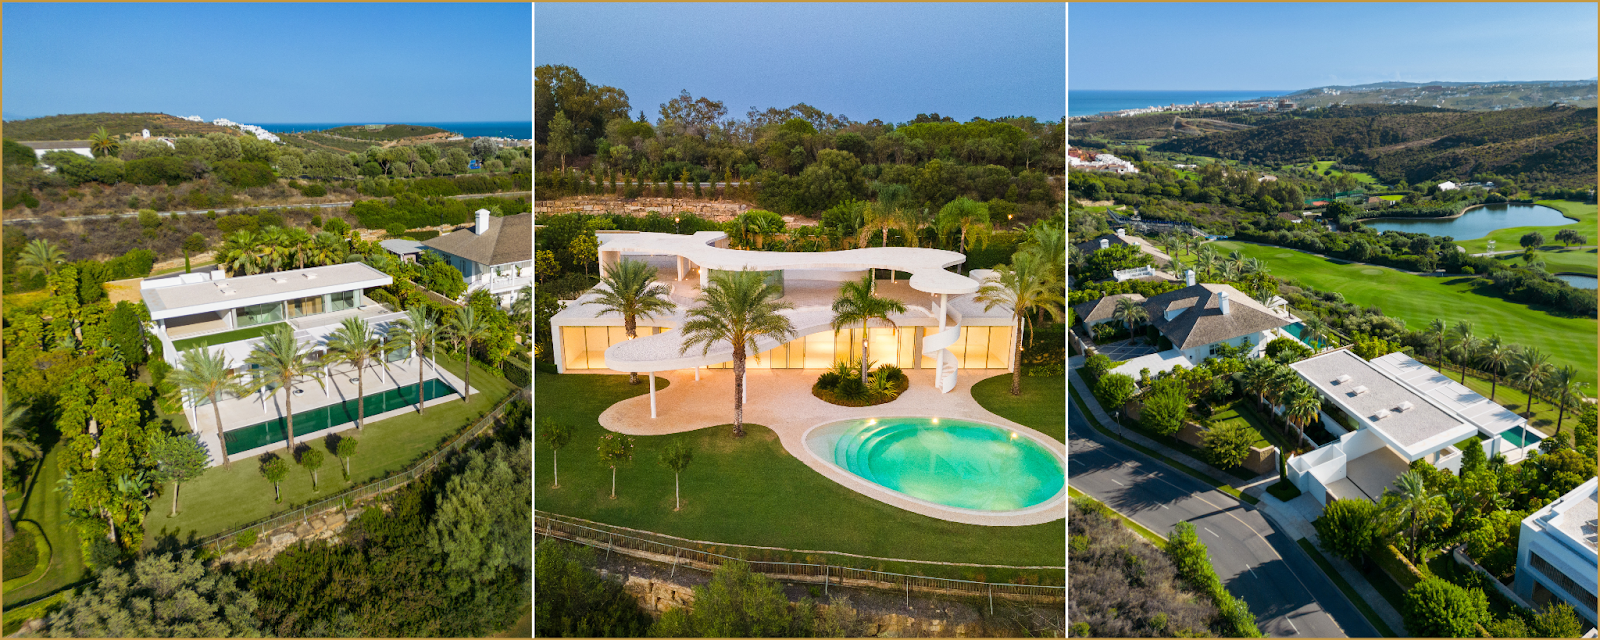 Finca Cortesin luxe villa's te koop Hansson Hertzell onroerend goed in Casares Costa del Sol